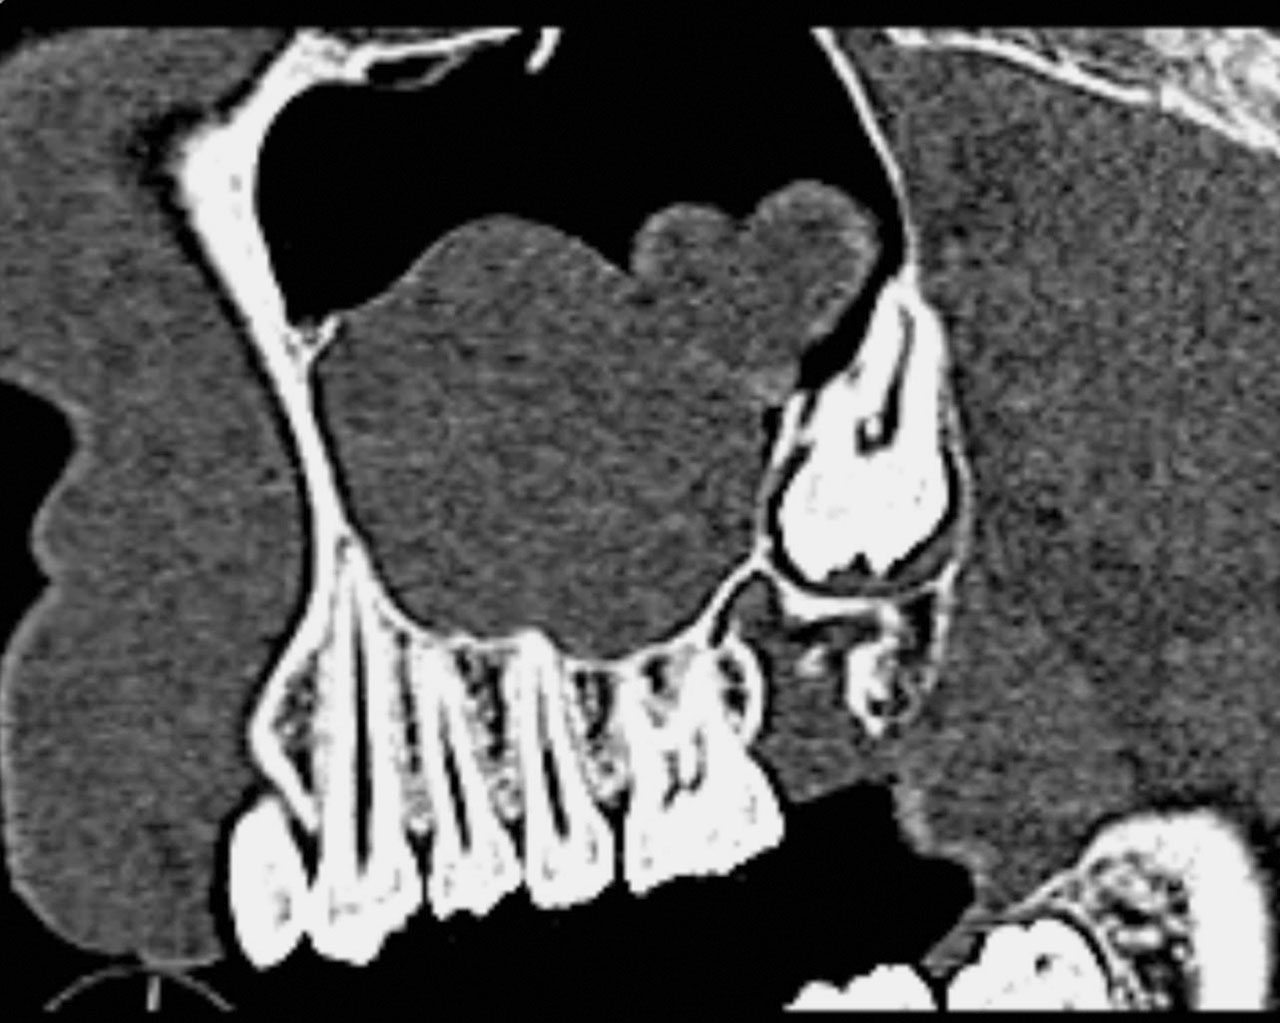 Abb. 3a In der digitalen Volumentomografie ist über der Krone des retinierten Zahns ein scharf begrenzter, osteolytischer Prozess zu erkennen, der vereinzelte, kleinflächige Verschattungen aufweist. Als Nebenbefund findet sich eine Retentionszyste in der rechten Kieferhöhle.